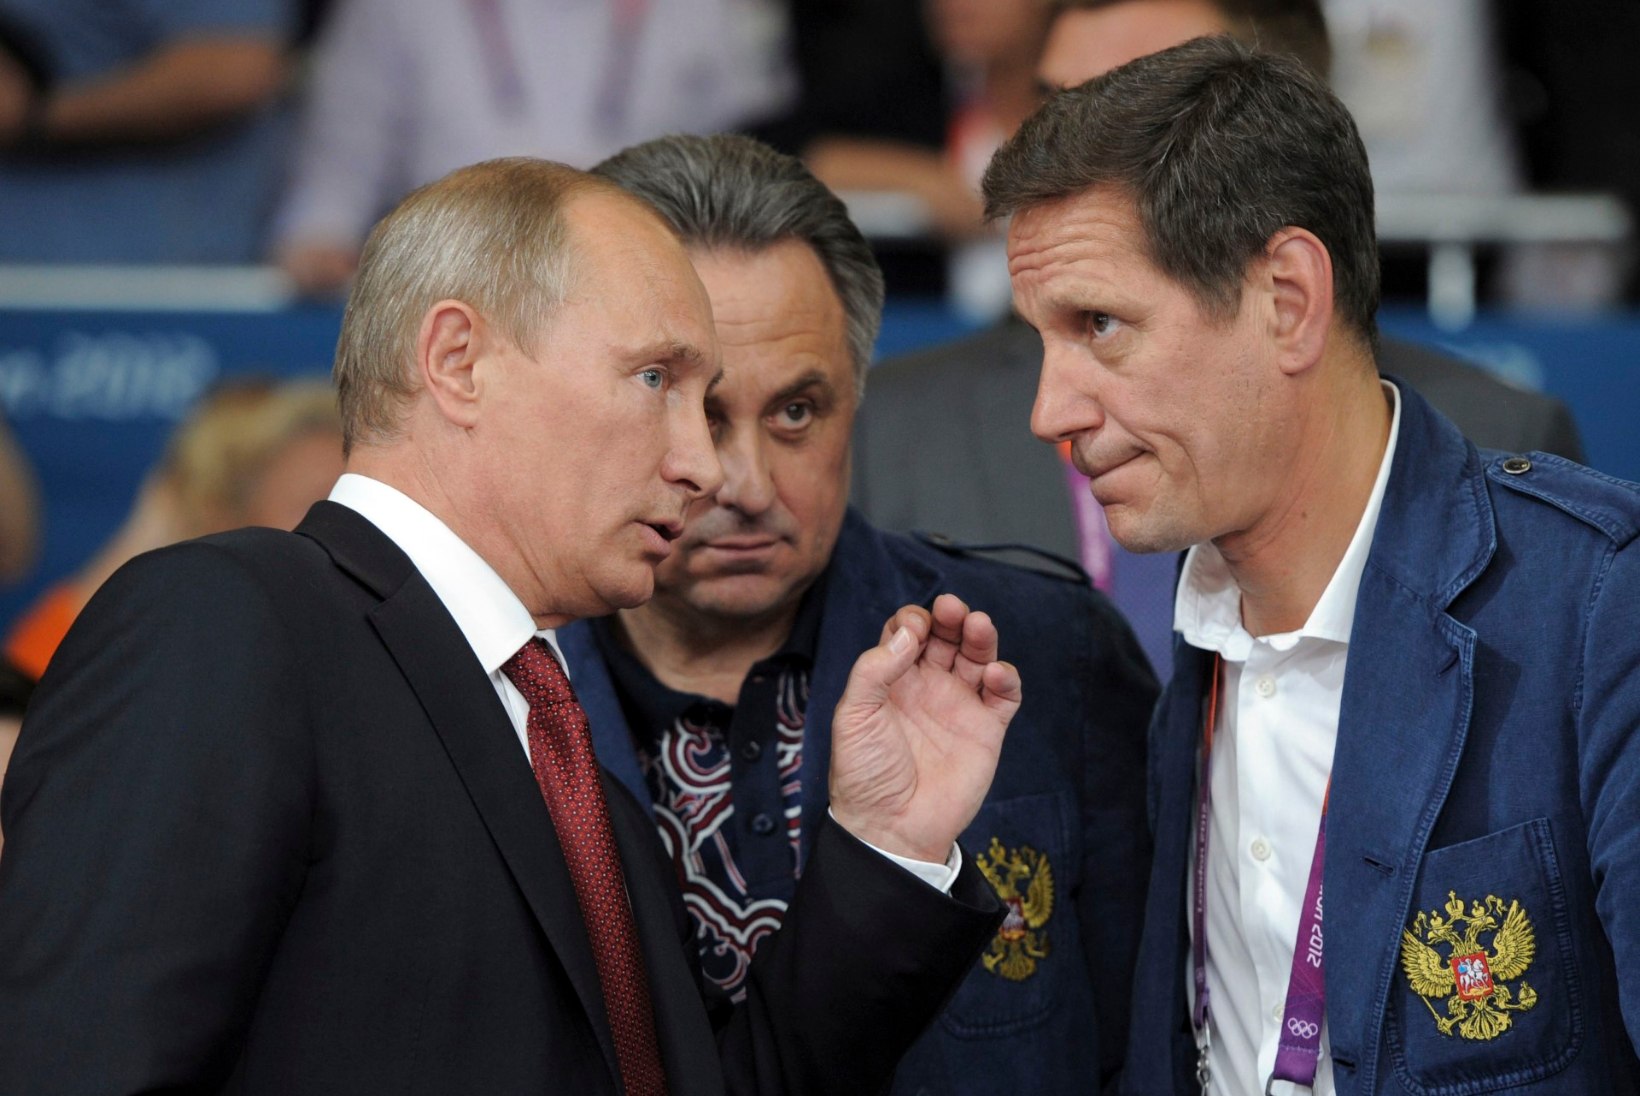 Venemaa olümpiakomitee president: Putini seostamine dopinguga õõnestab WADA raporti usaldusväärsust